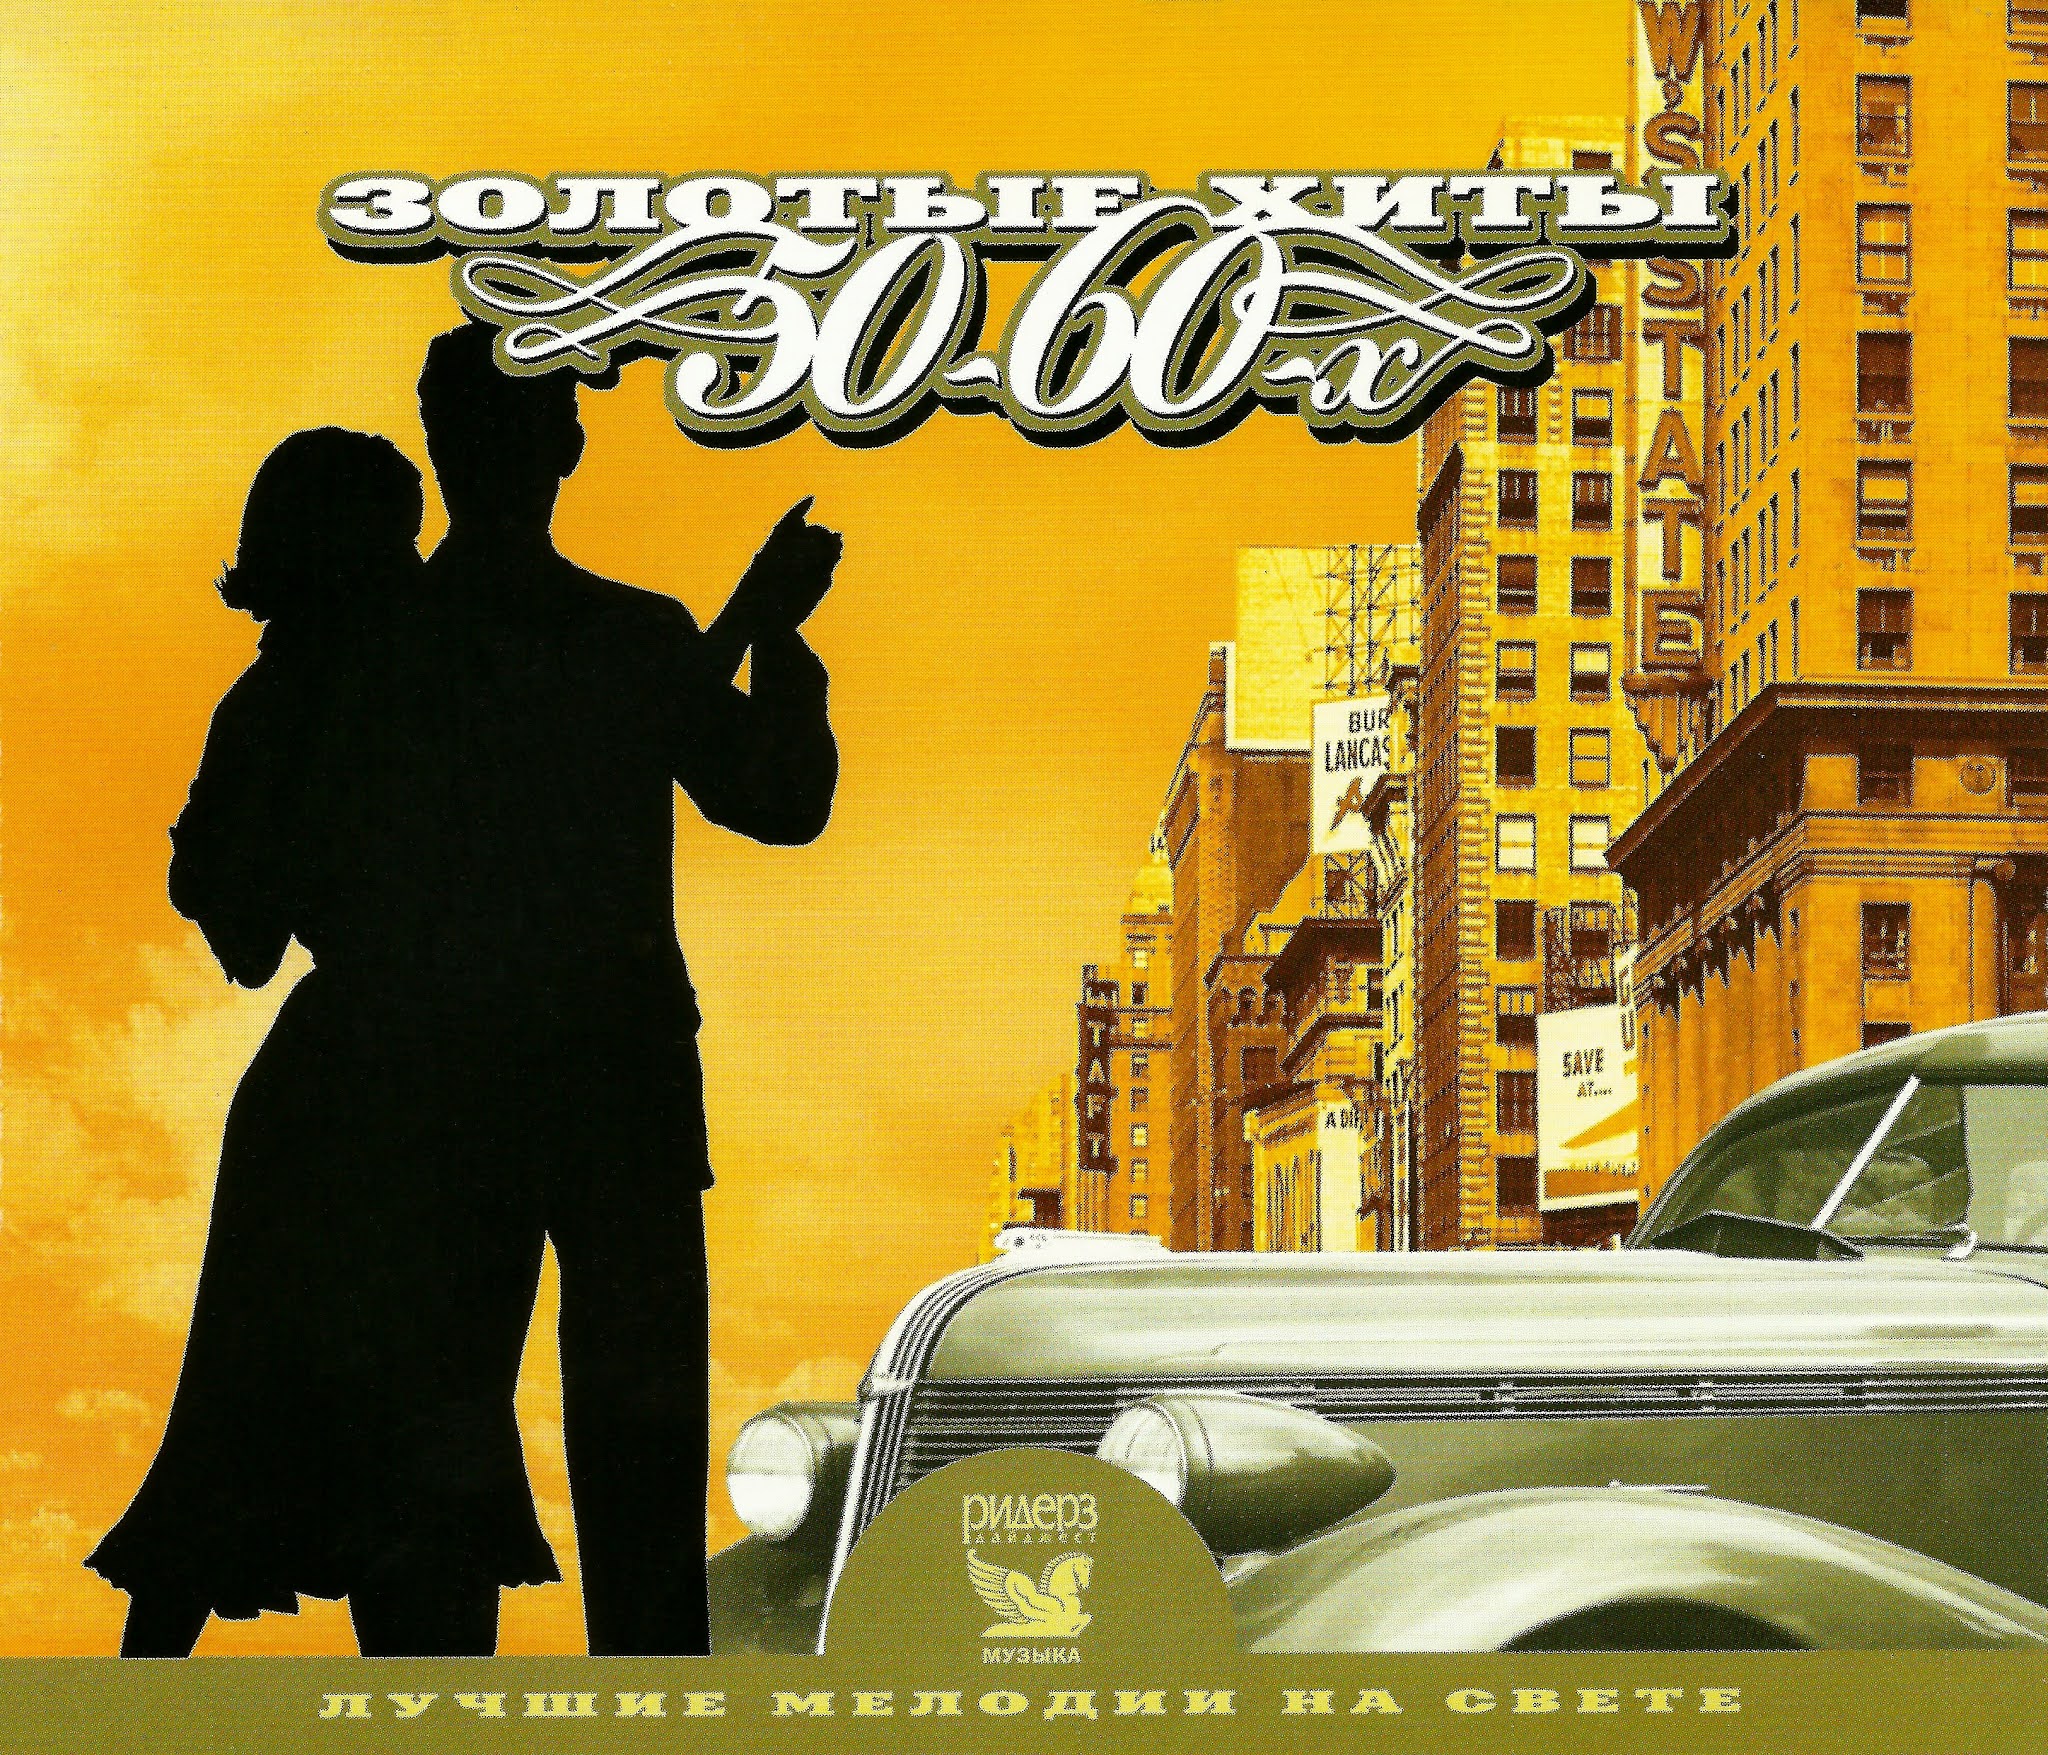 Популярная музыка 30. Постер 999 "музыка" 40х28 см. CD золотые хиты 50-60-х. Обложки альбомов шестидесятых. Золотое ретро 50-60 годов cd2 (2005).